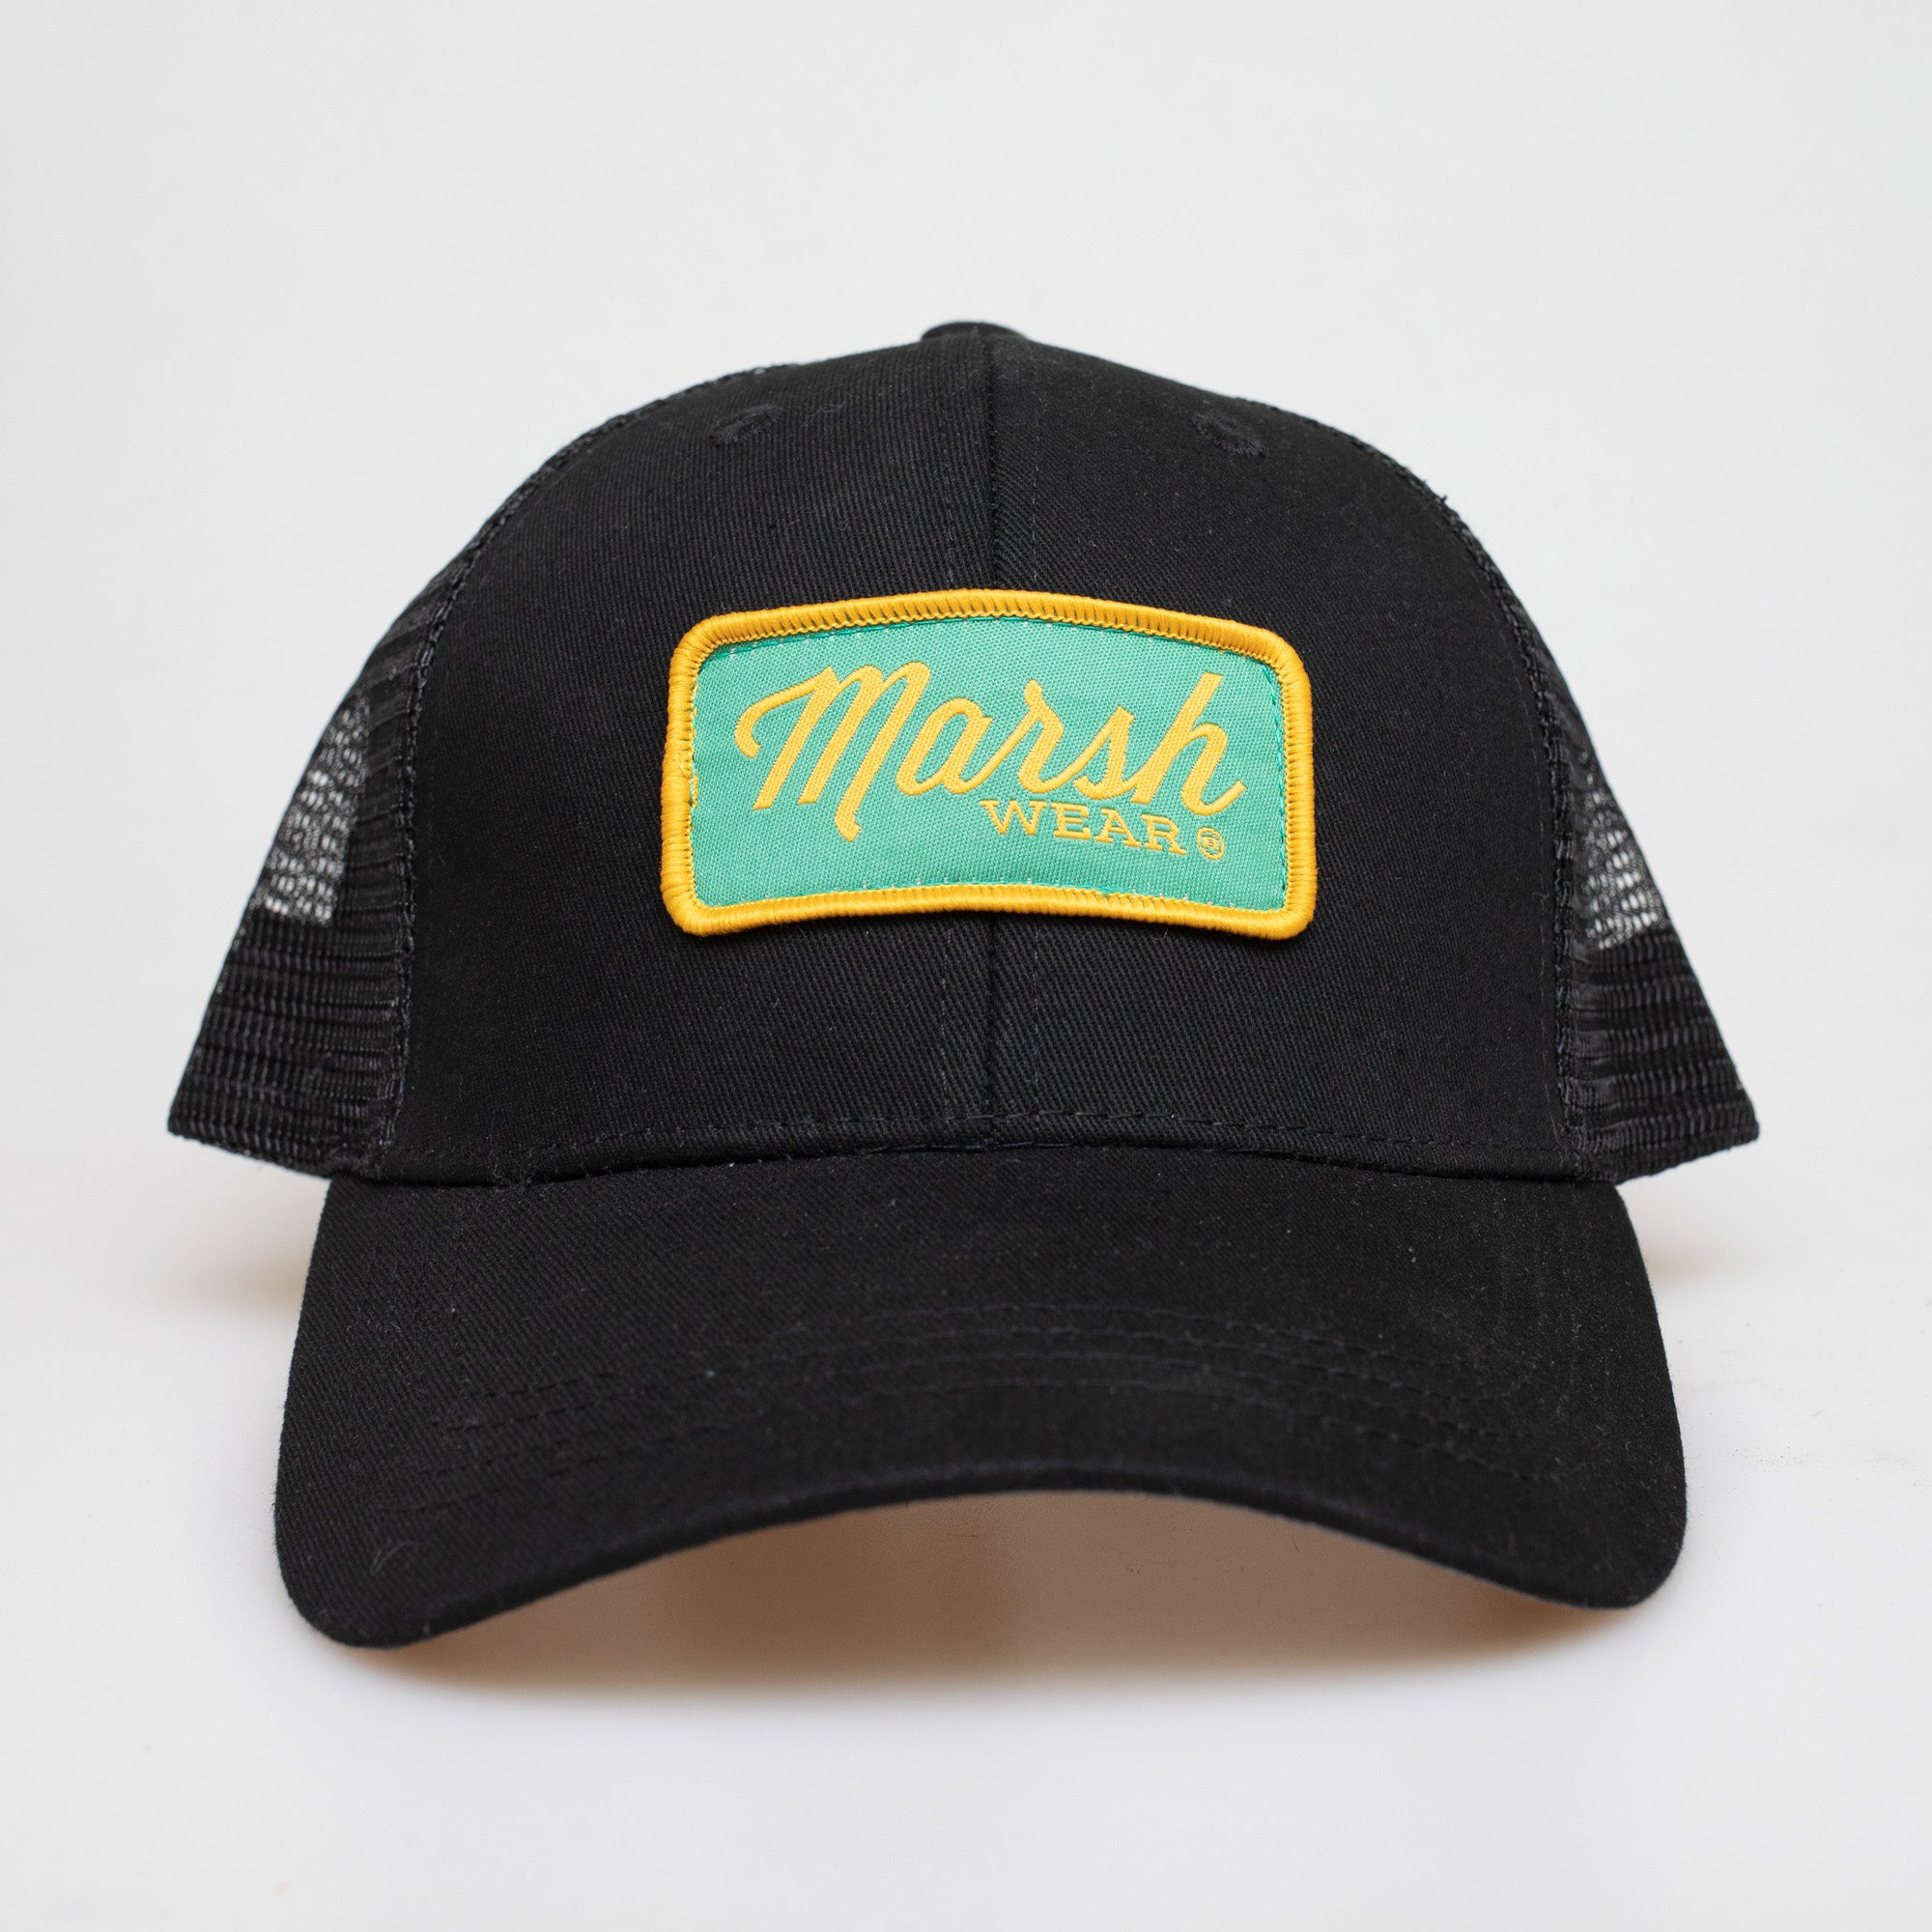 Marsh Wear Pro Men's Trucker Hat